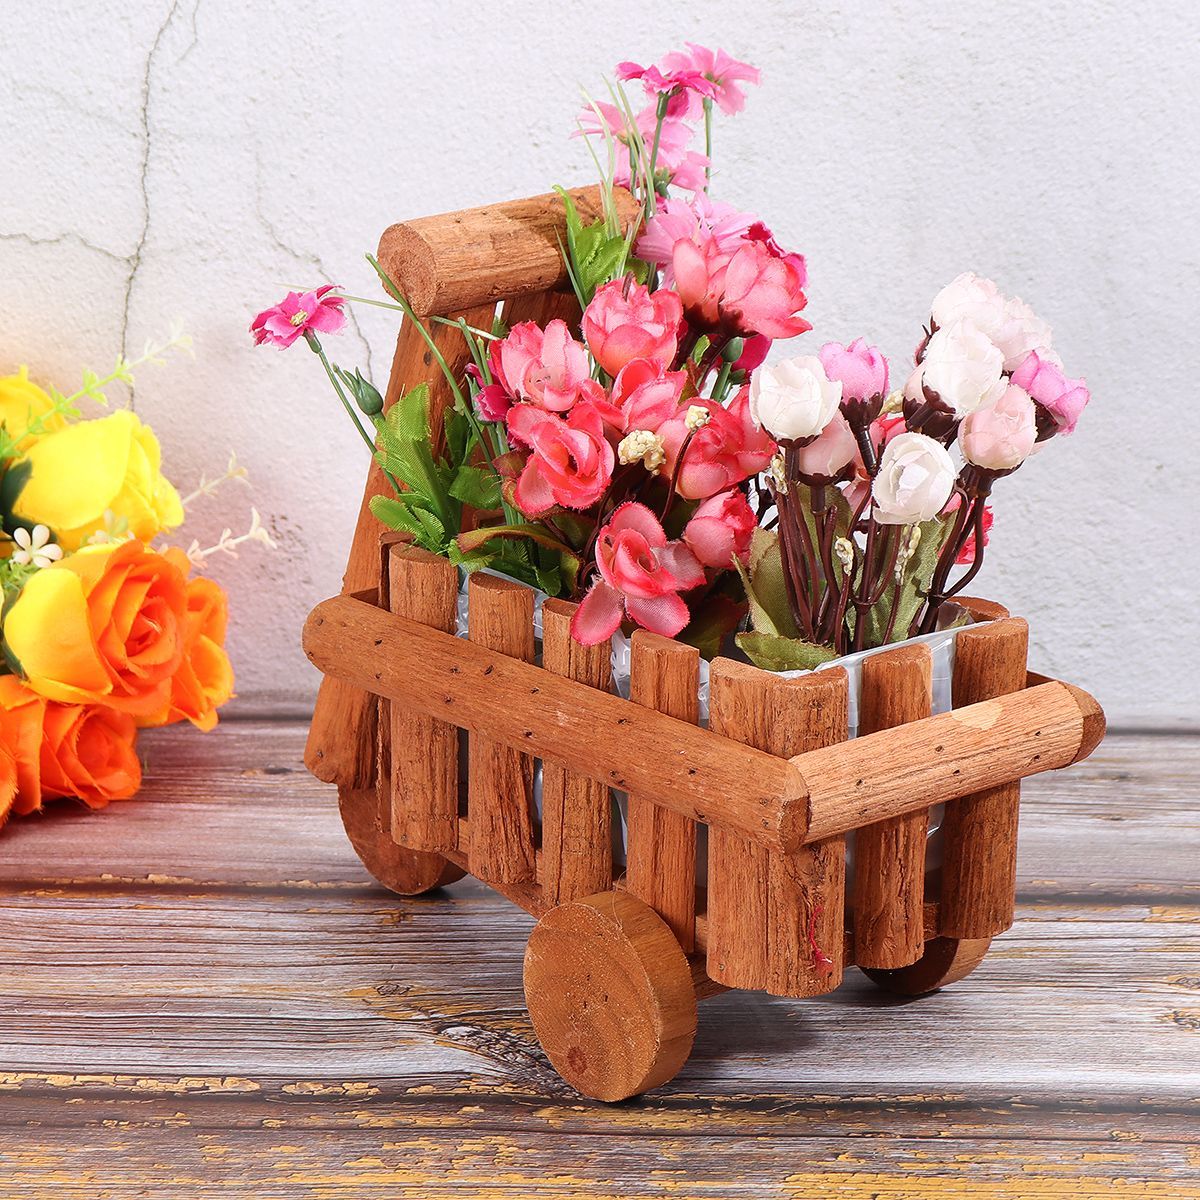 Small-Cart-Flower-Pot-Wooden-Wheelbarrow-Planter-Succulent-Container-Ornament-1727273